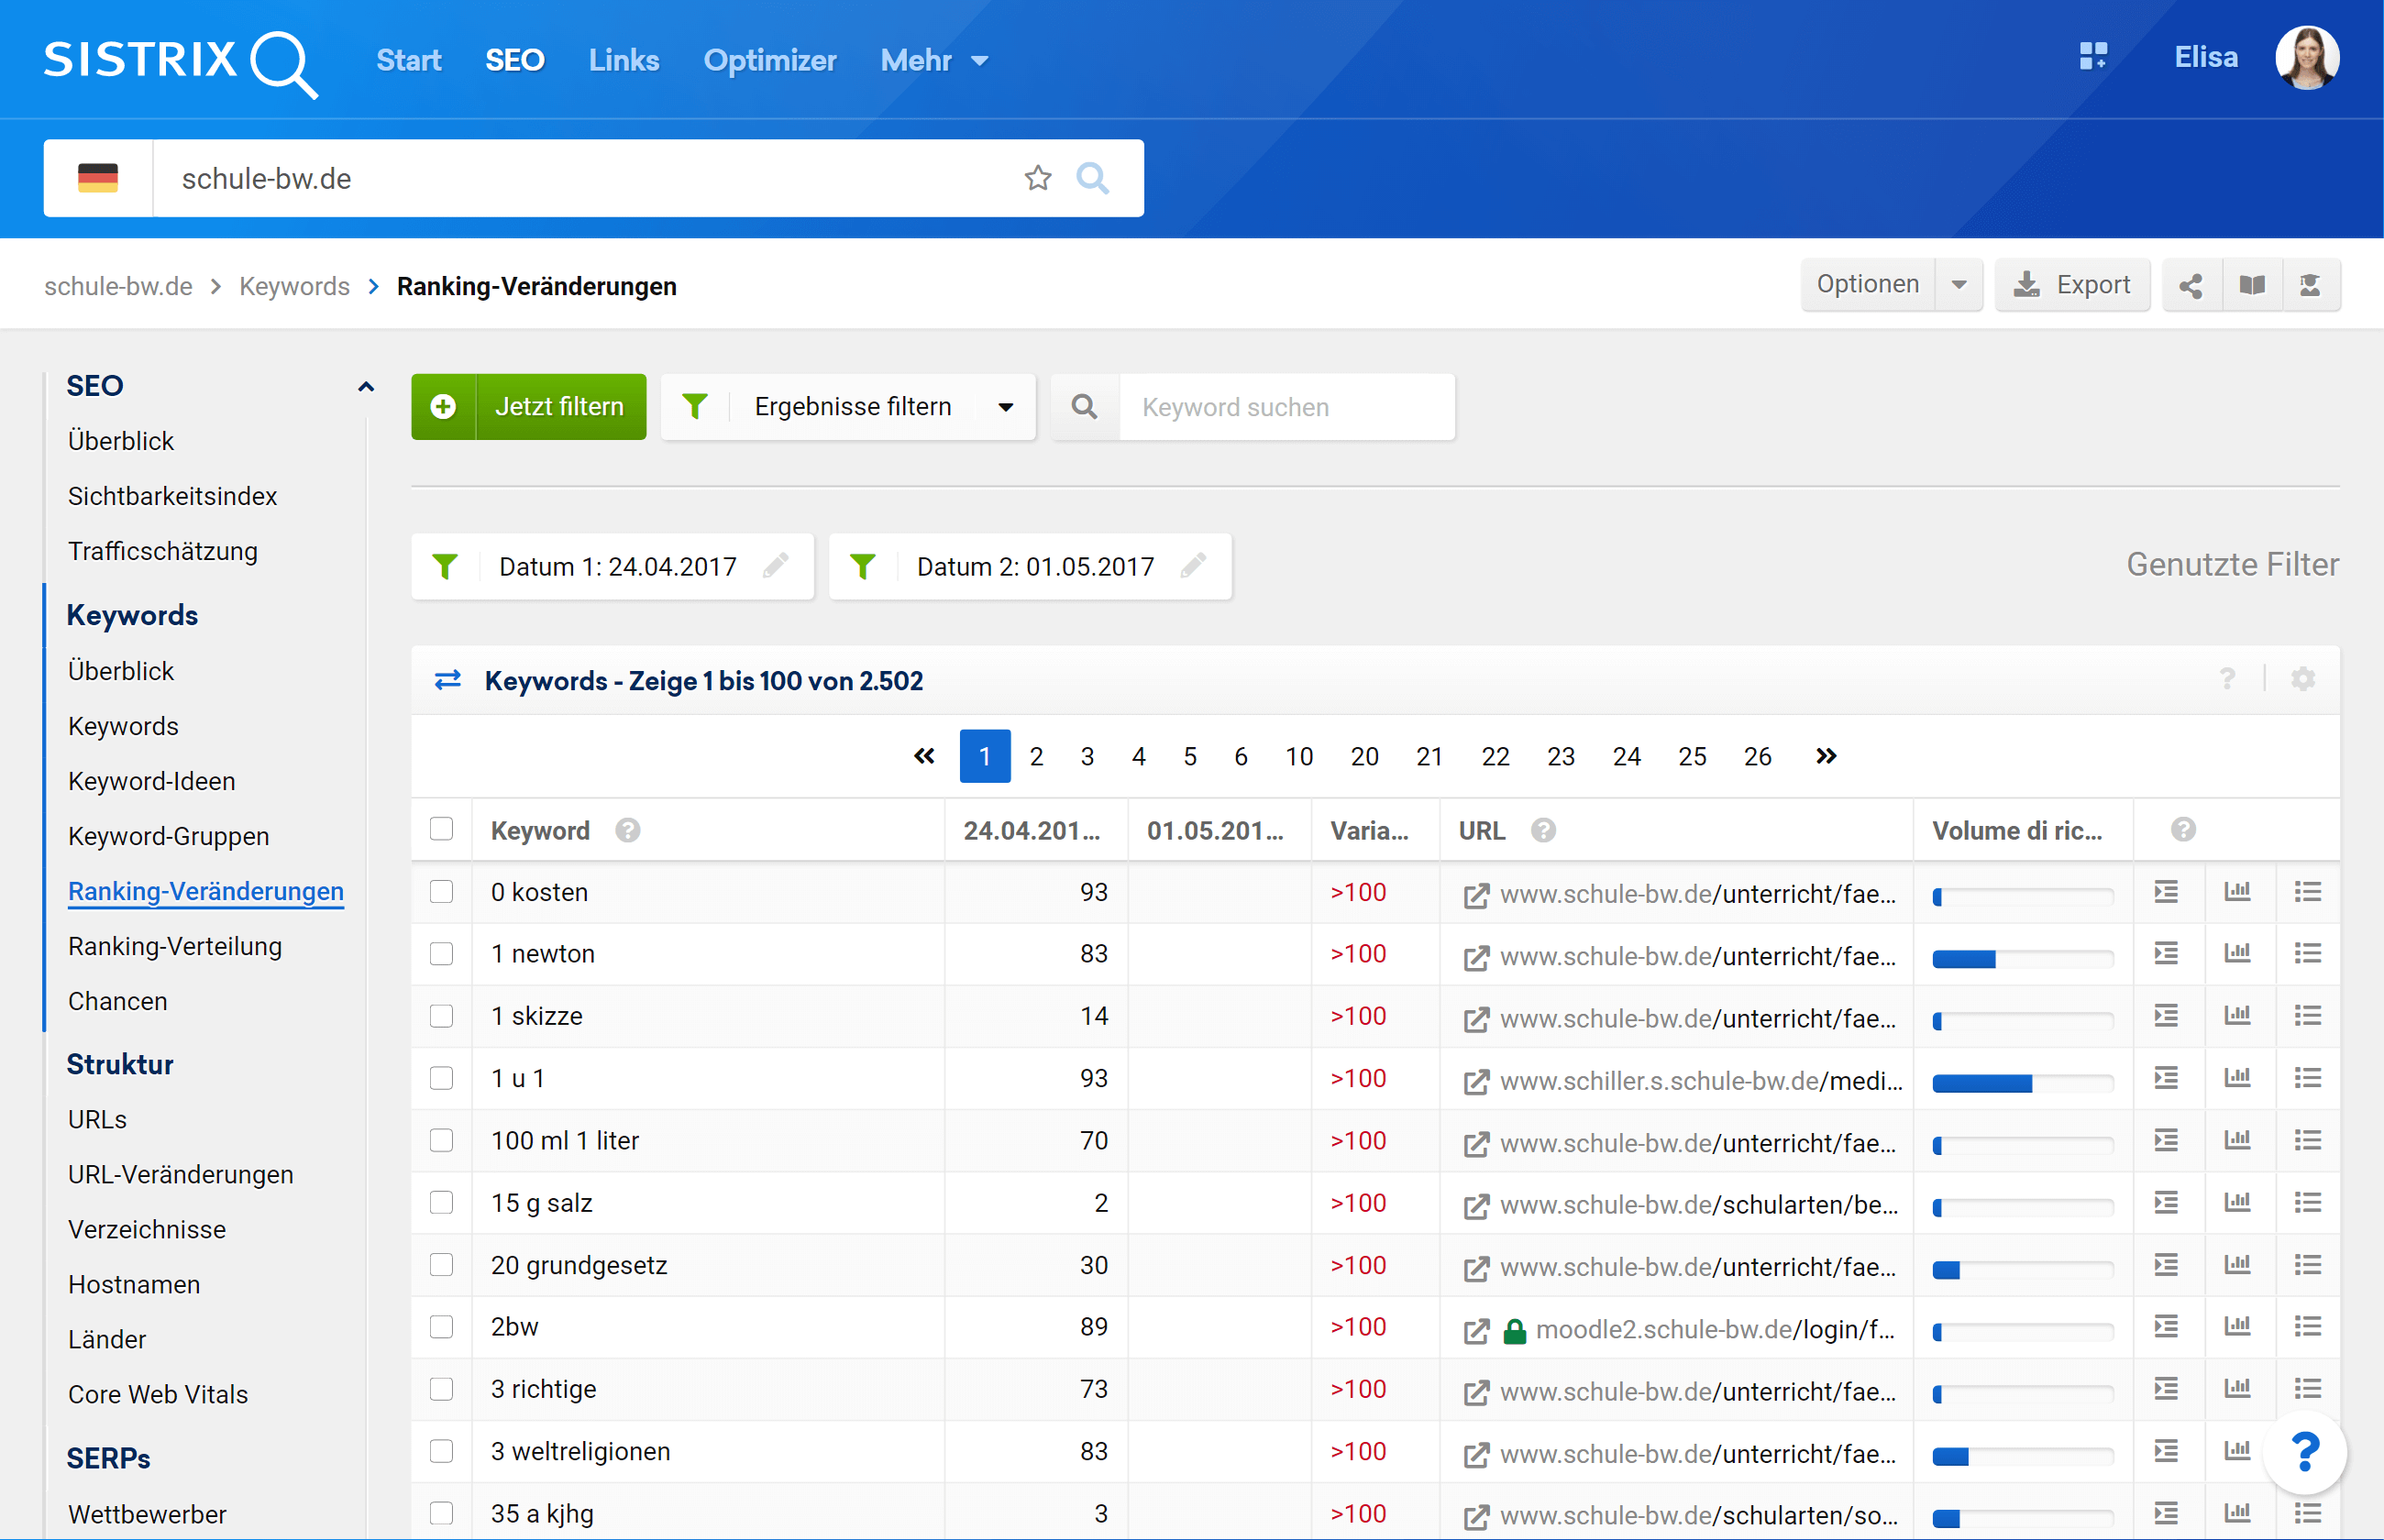 Ansicht der Ranking-Veränderung in der SISTRIX Toolbox für die Domain schule-bw.de. Es werden die Zeitpunkte 24.04.2017 und 01.05.2017 miteinander verglichen und alle verlorenen Keywords angezeigt.